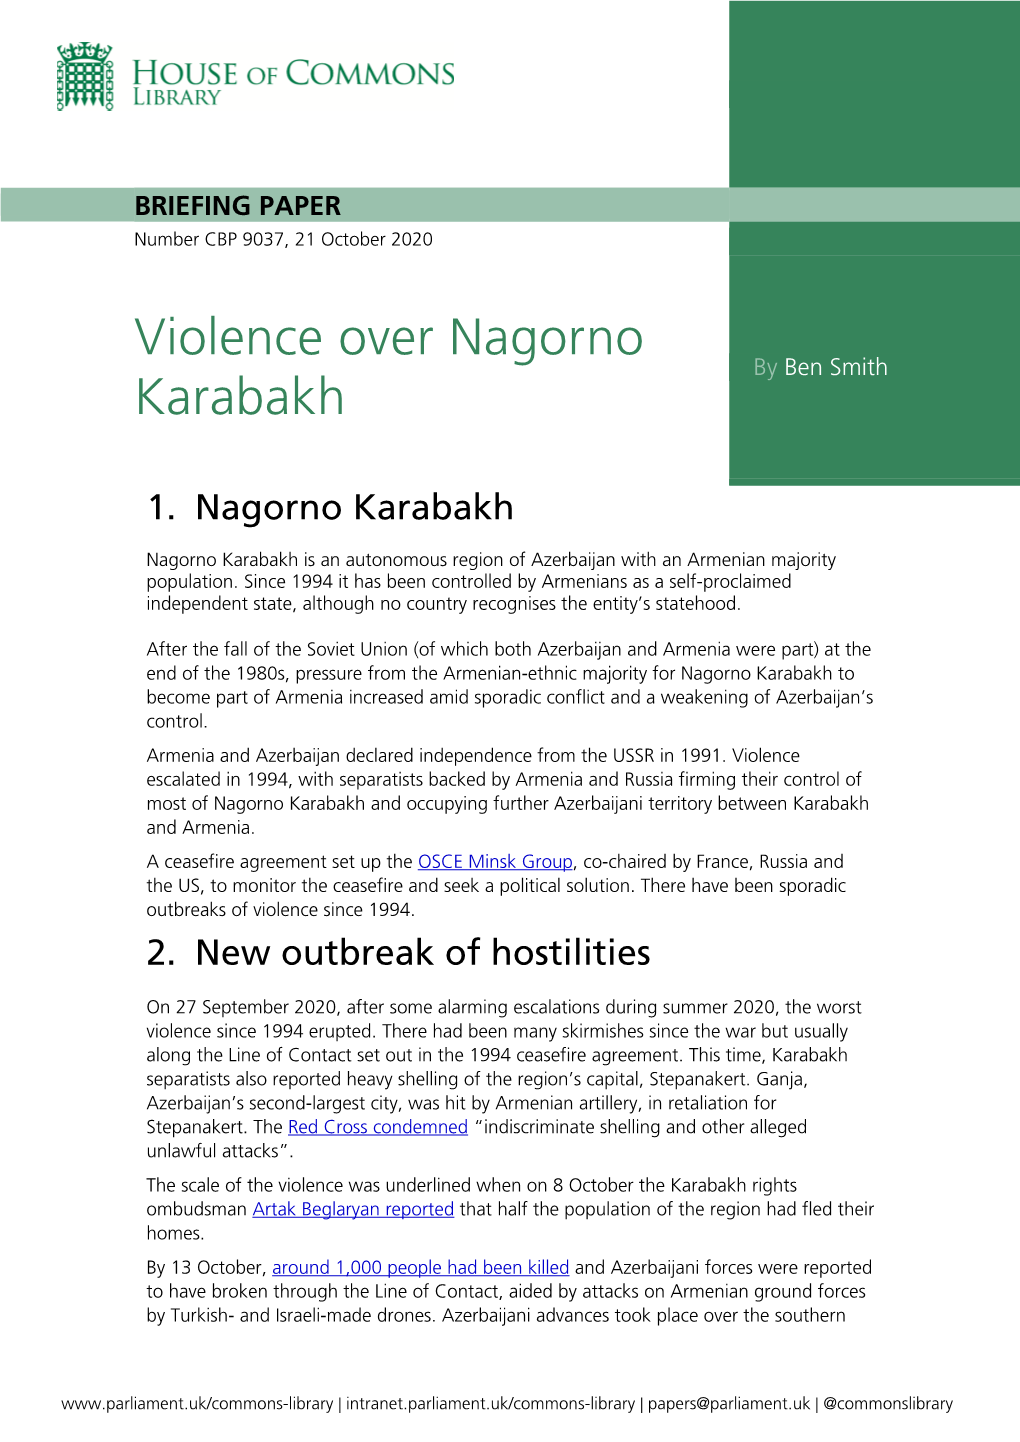 Violence Over Nagorno Karabakh